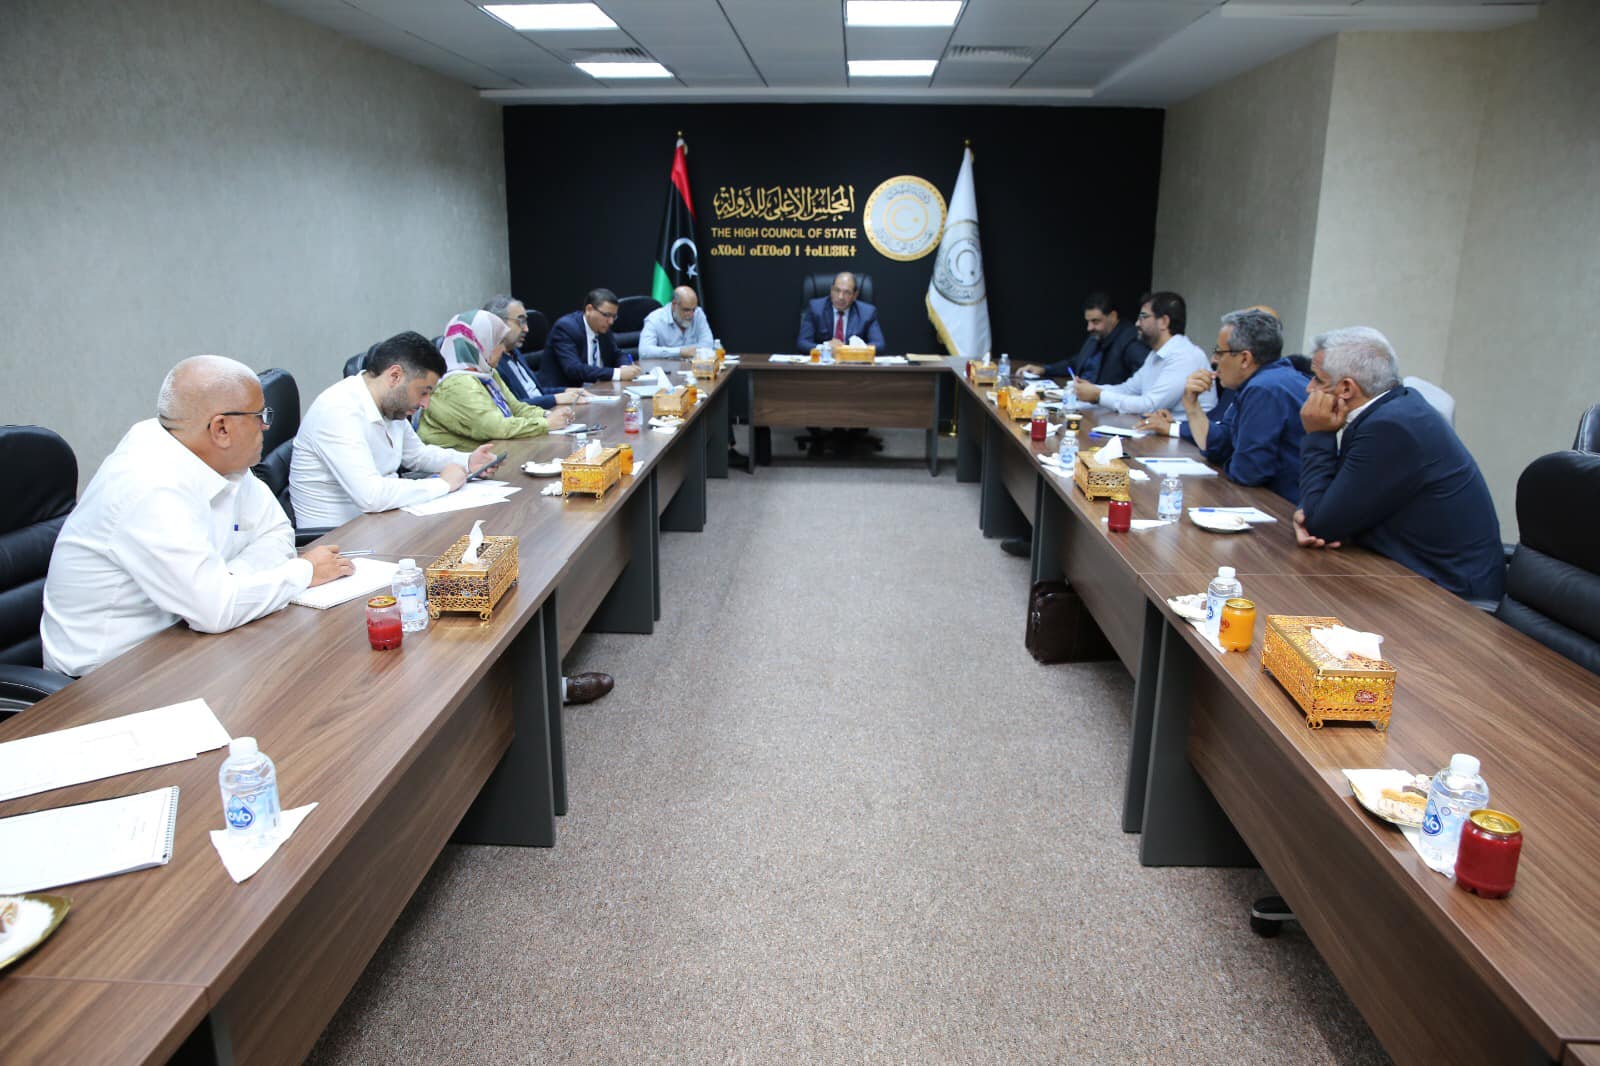 لجنة الخدمات بالمجلس الأعلى للدولة تعقد اجتماعا لتقييم الاطار التشريعي والتنفيذي للحكم المحلي في ليبيا